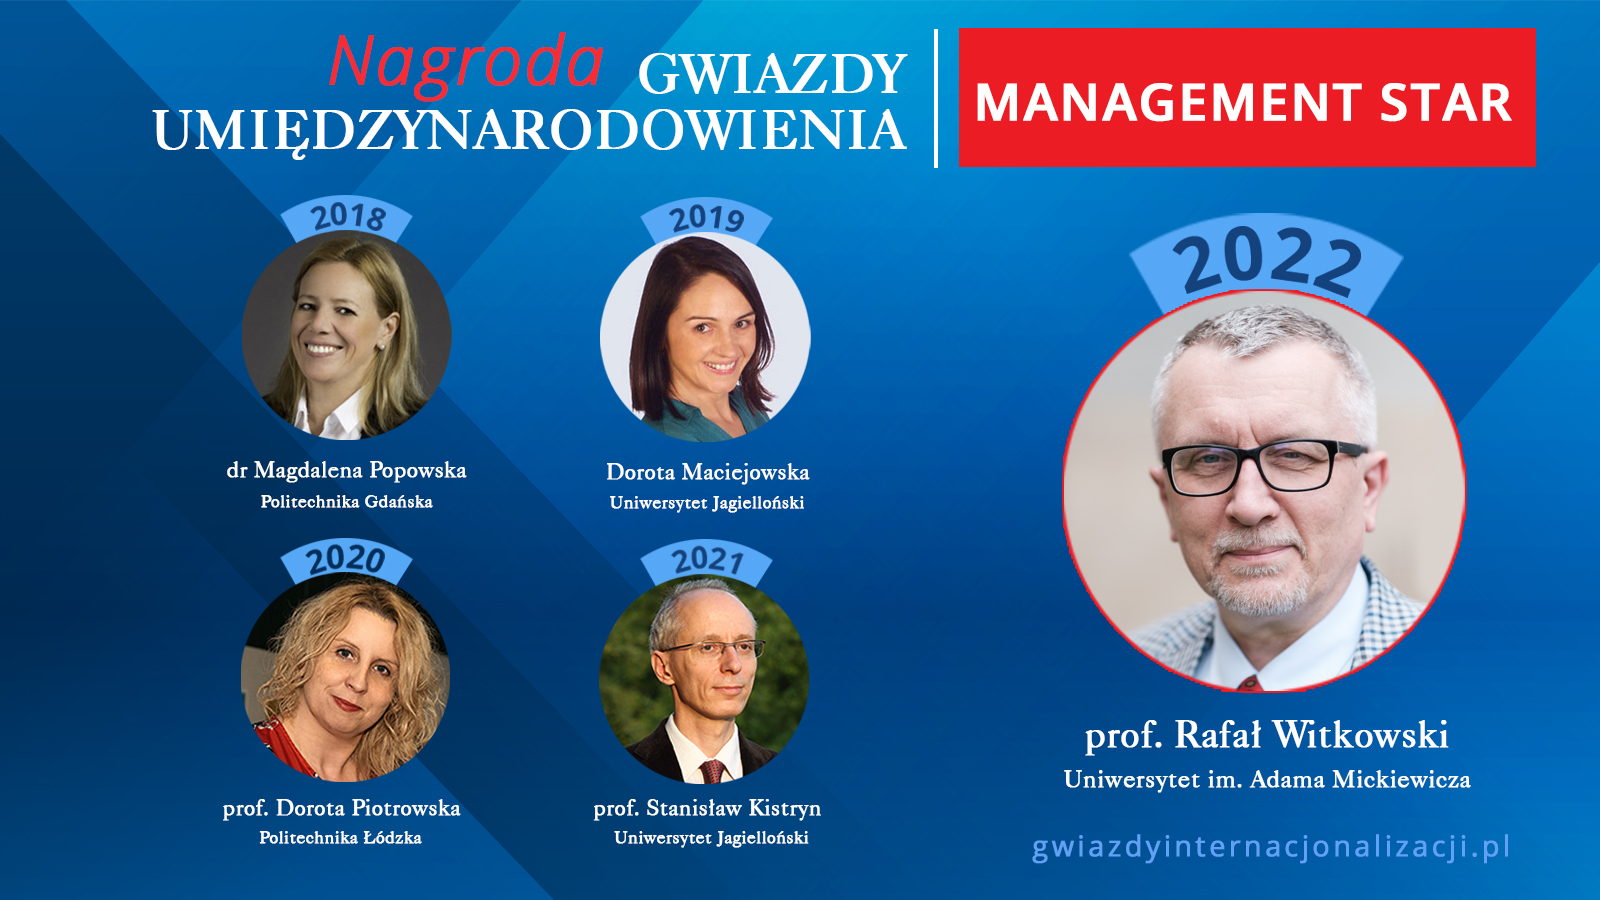 Gwiazda Zarządzania / MANAGEMENT STAR 2022 - Rafał Witkowski